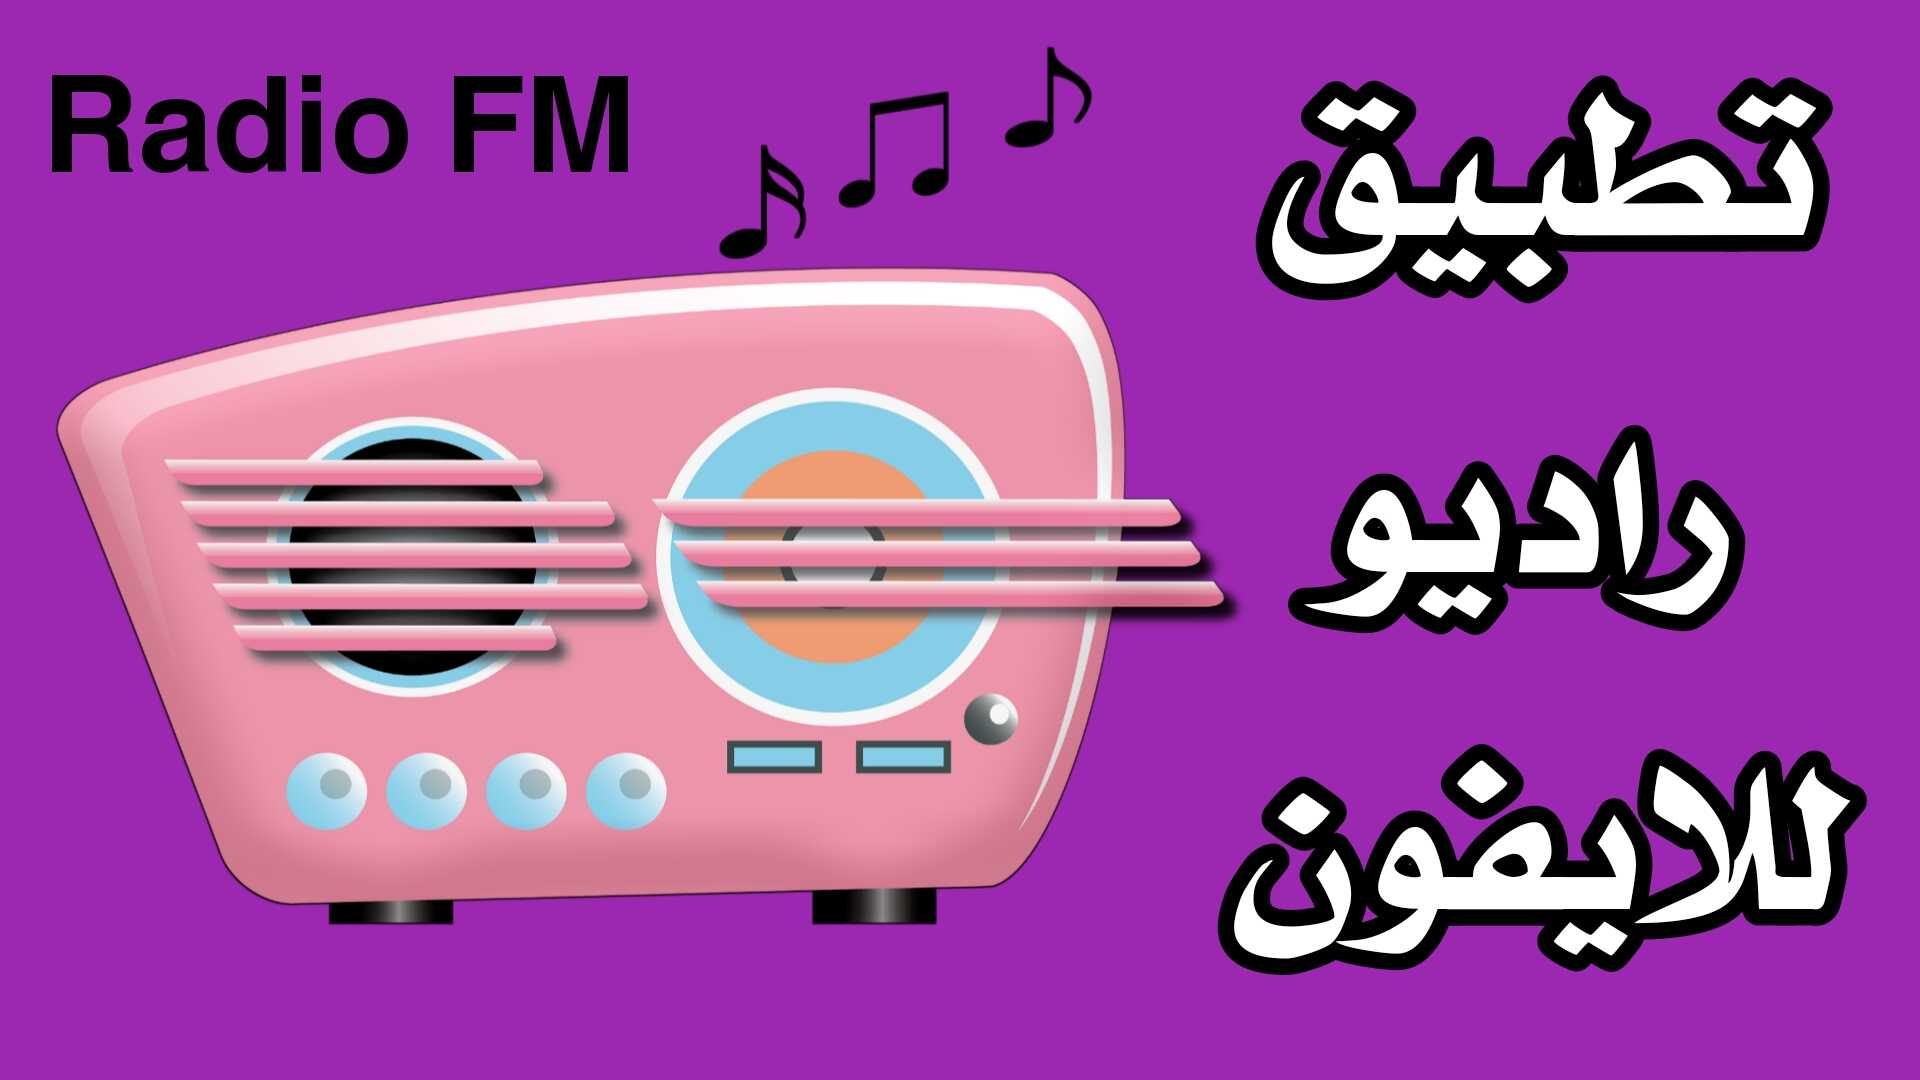 تطبيق راديو للايفون أستمع الى الاذاعات FM العربية والاجنبية